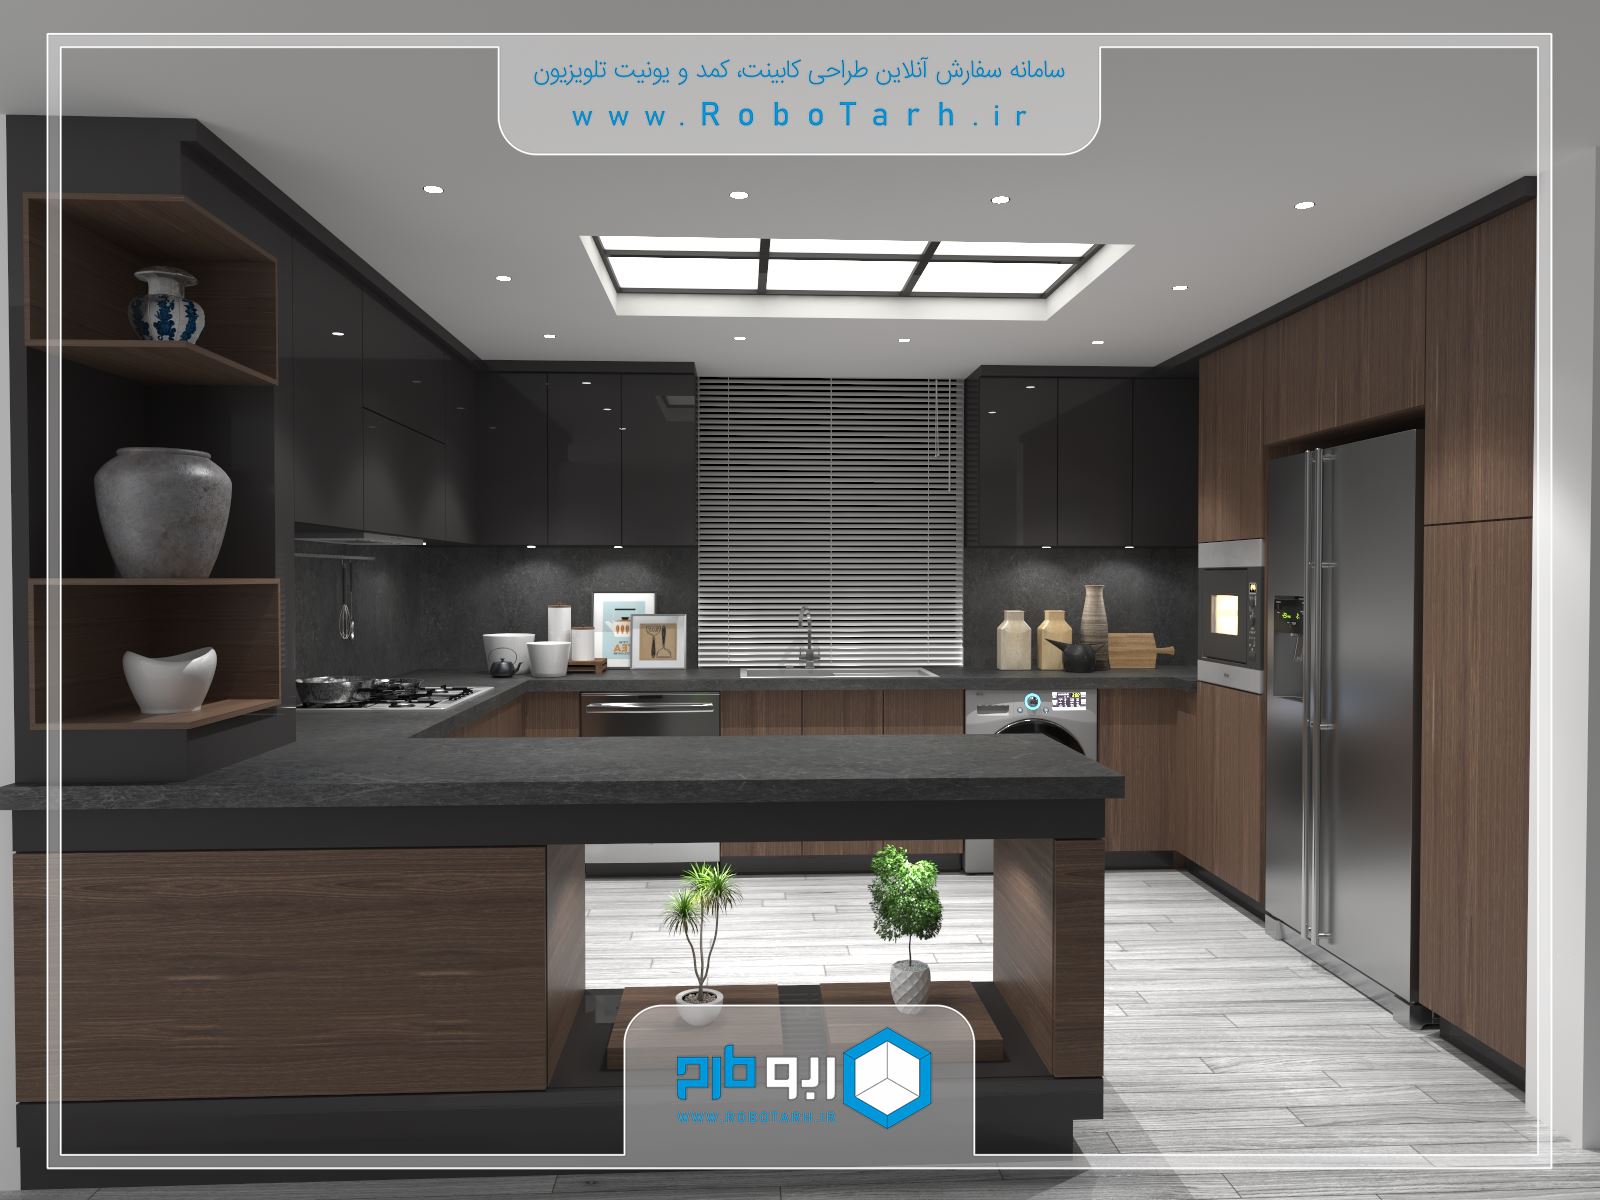 طراحی کابینت آشپزخانه ای به سبک مدرن و رنگ قهوه ای و مشکی  با چیدمان یو شکل - ربوطرح